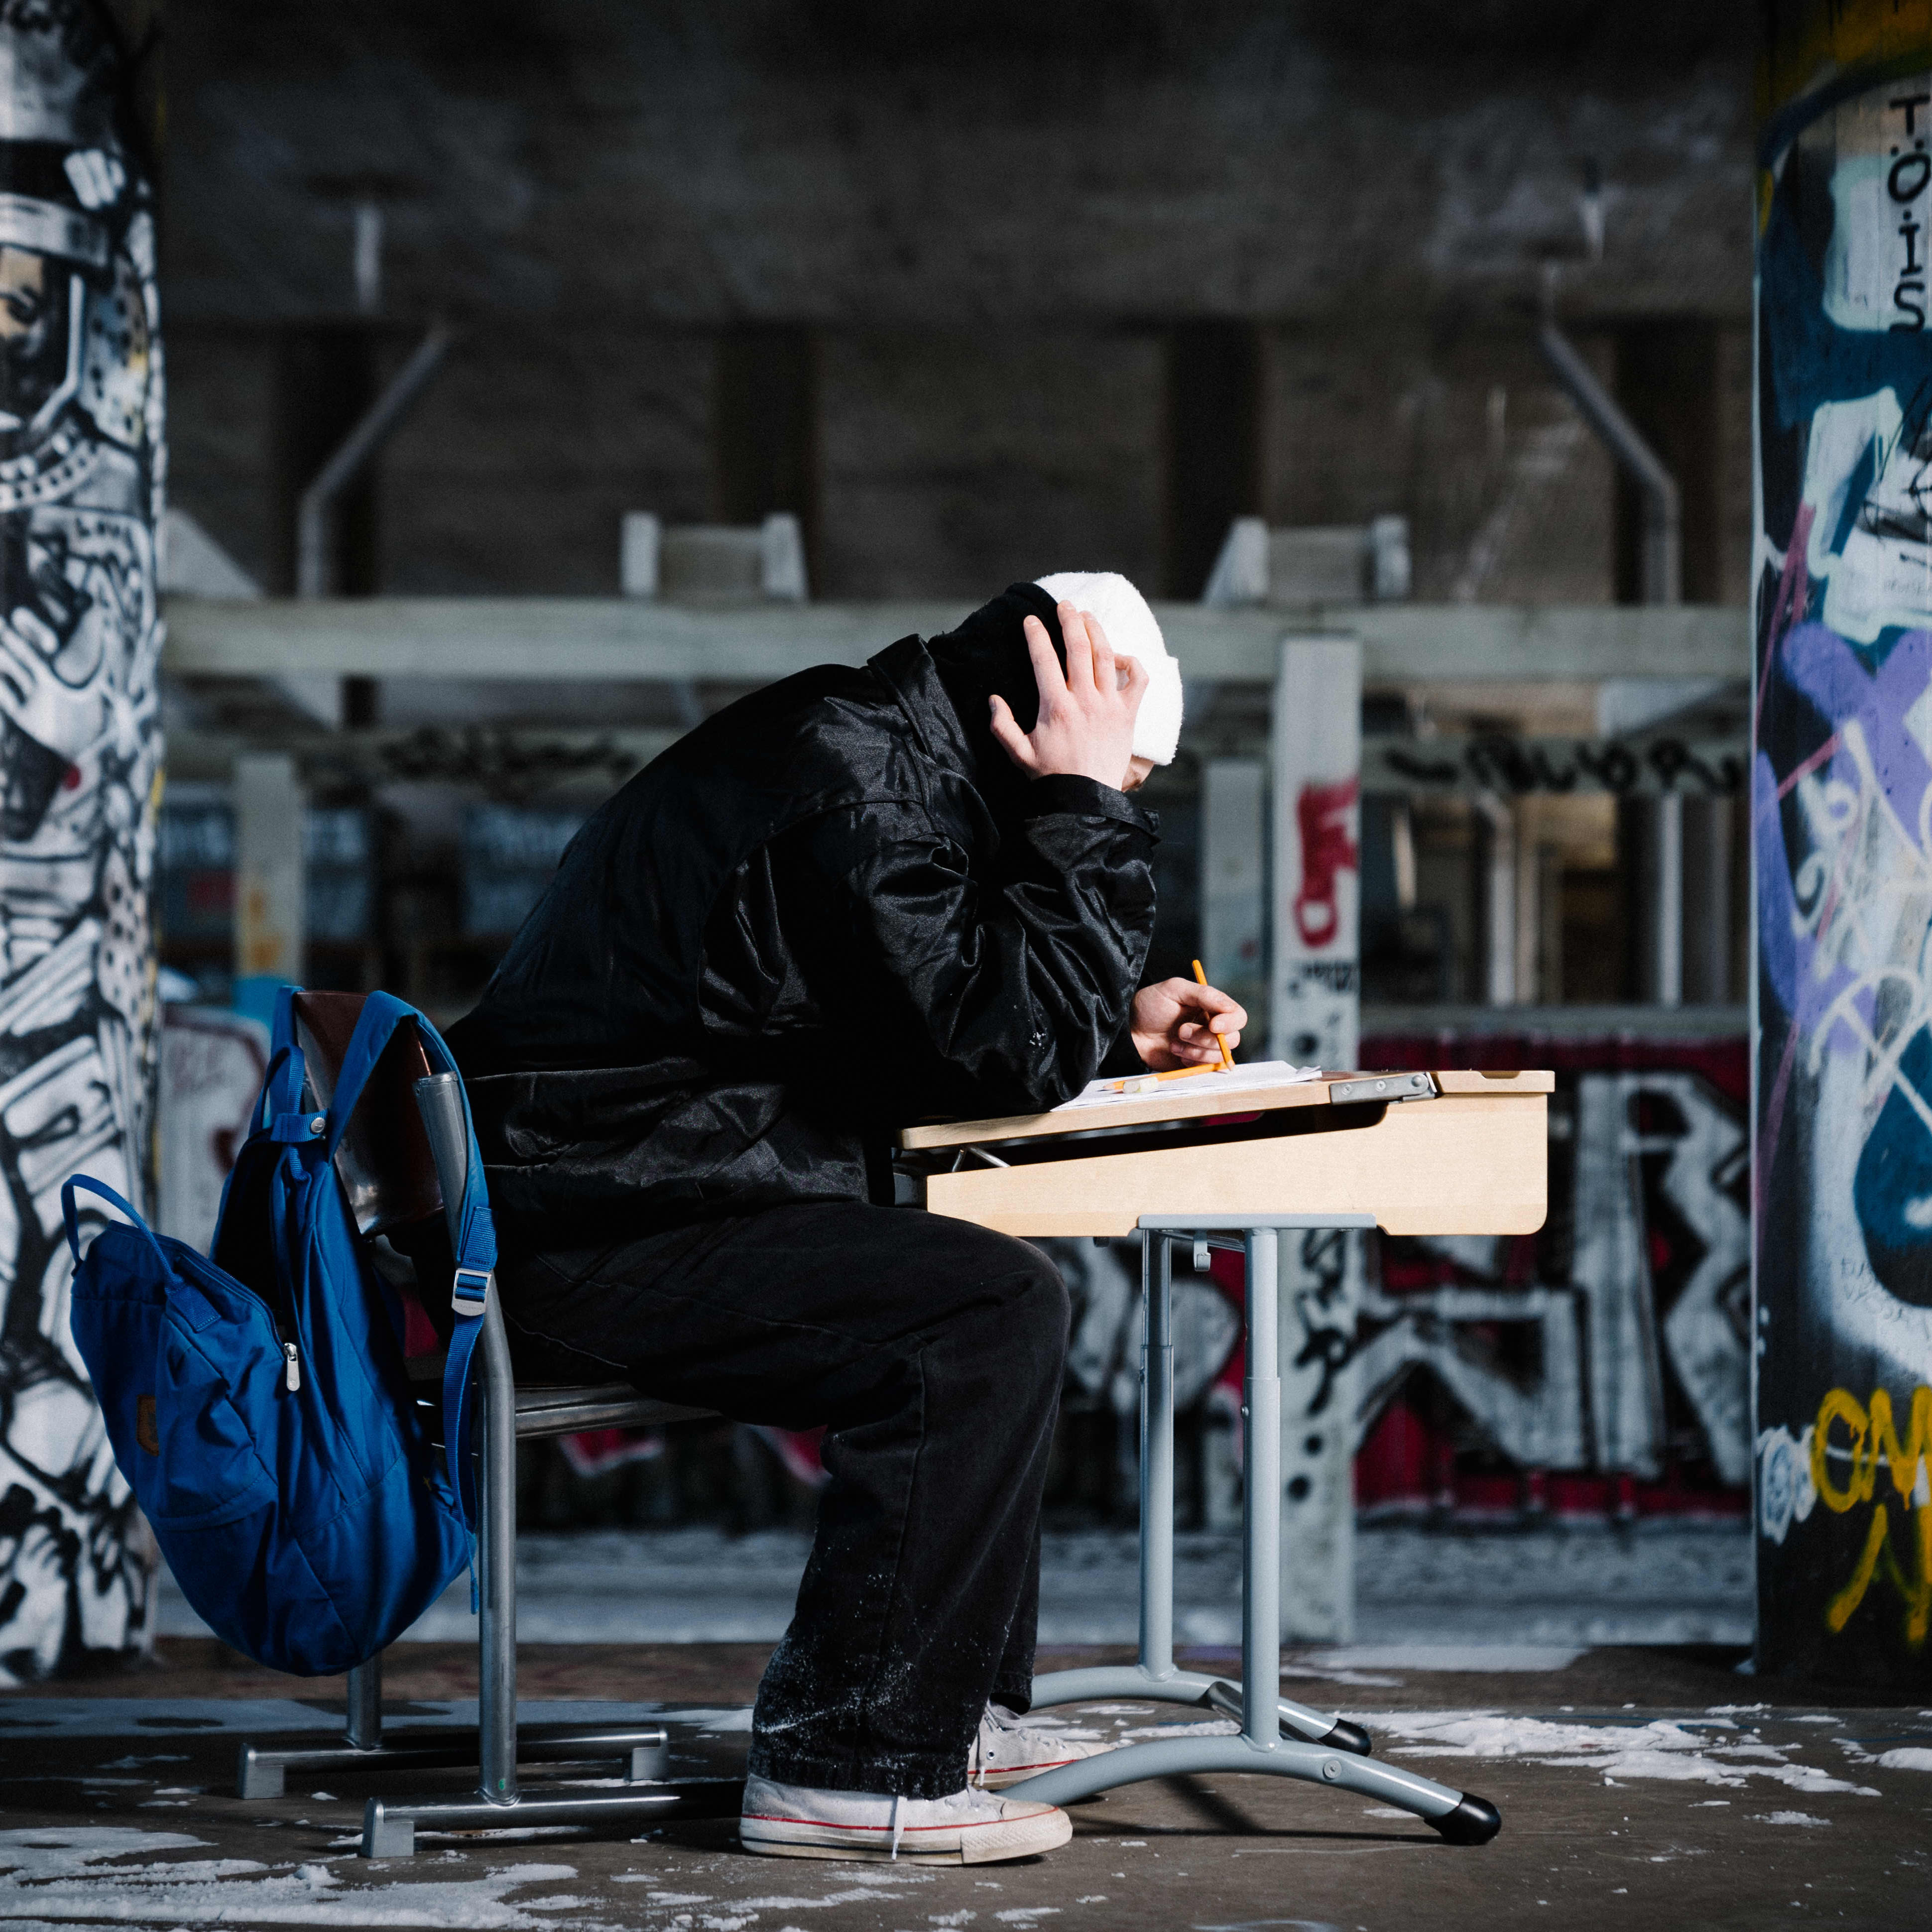 kuvituskuva nuori istuu yksin pulpetin ääressä graffitien ympäröimänä